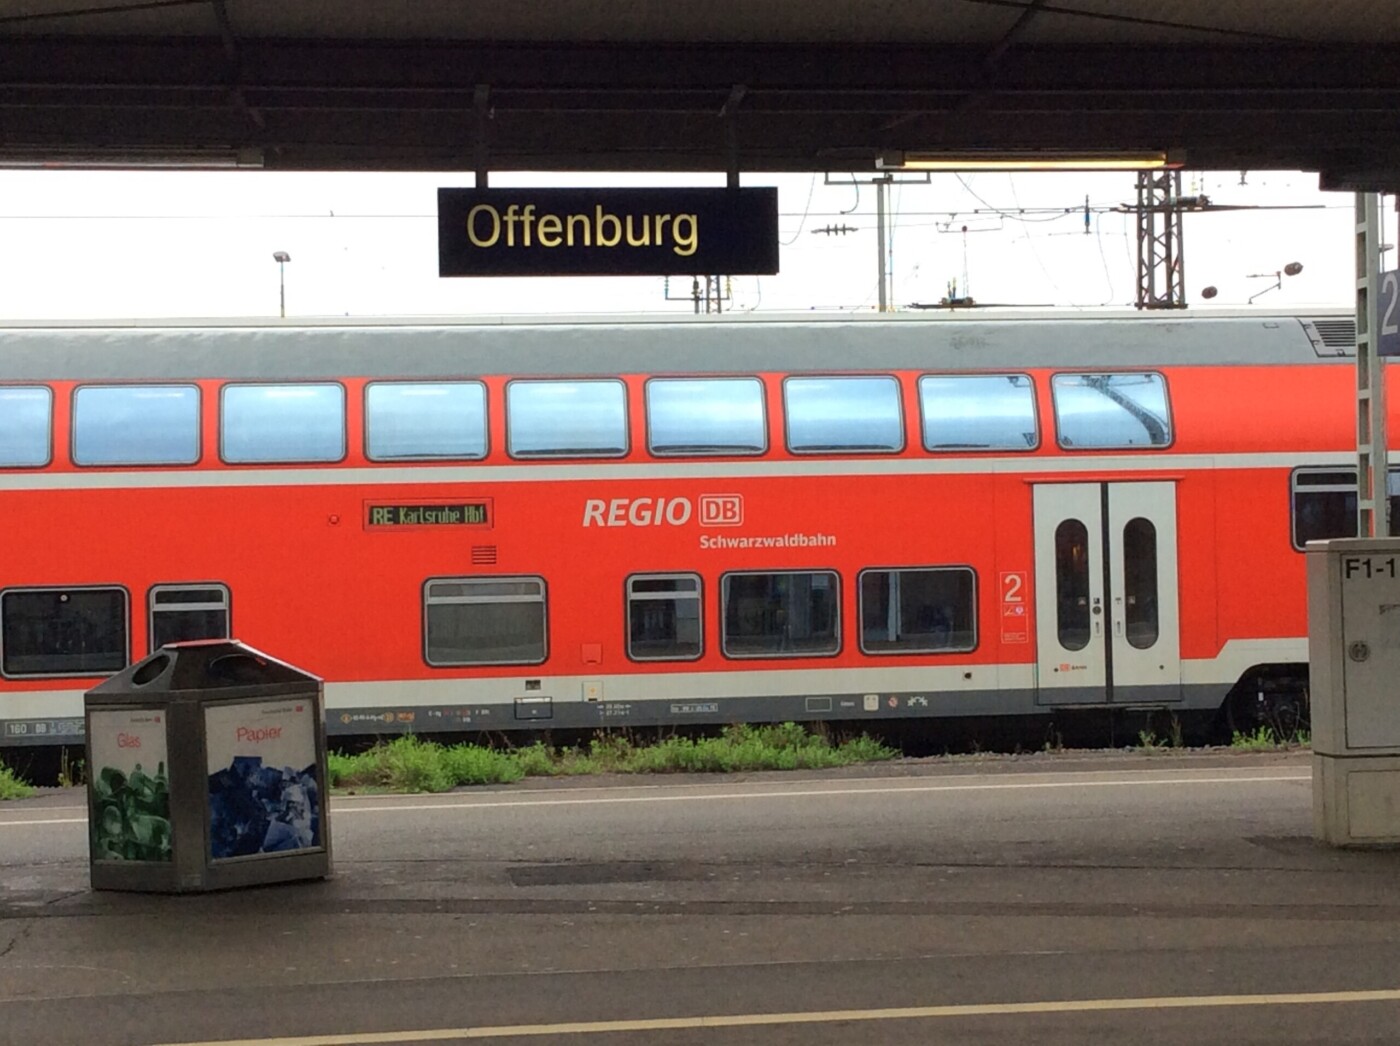 Grüner Antrag – Rheintalbahn jetzt menschenfreundlich ausbauen